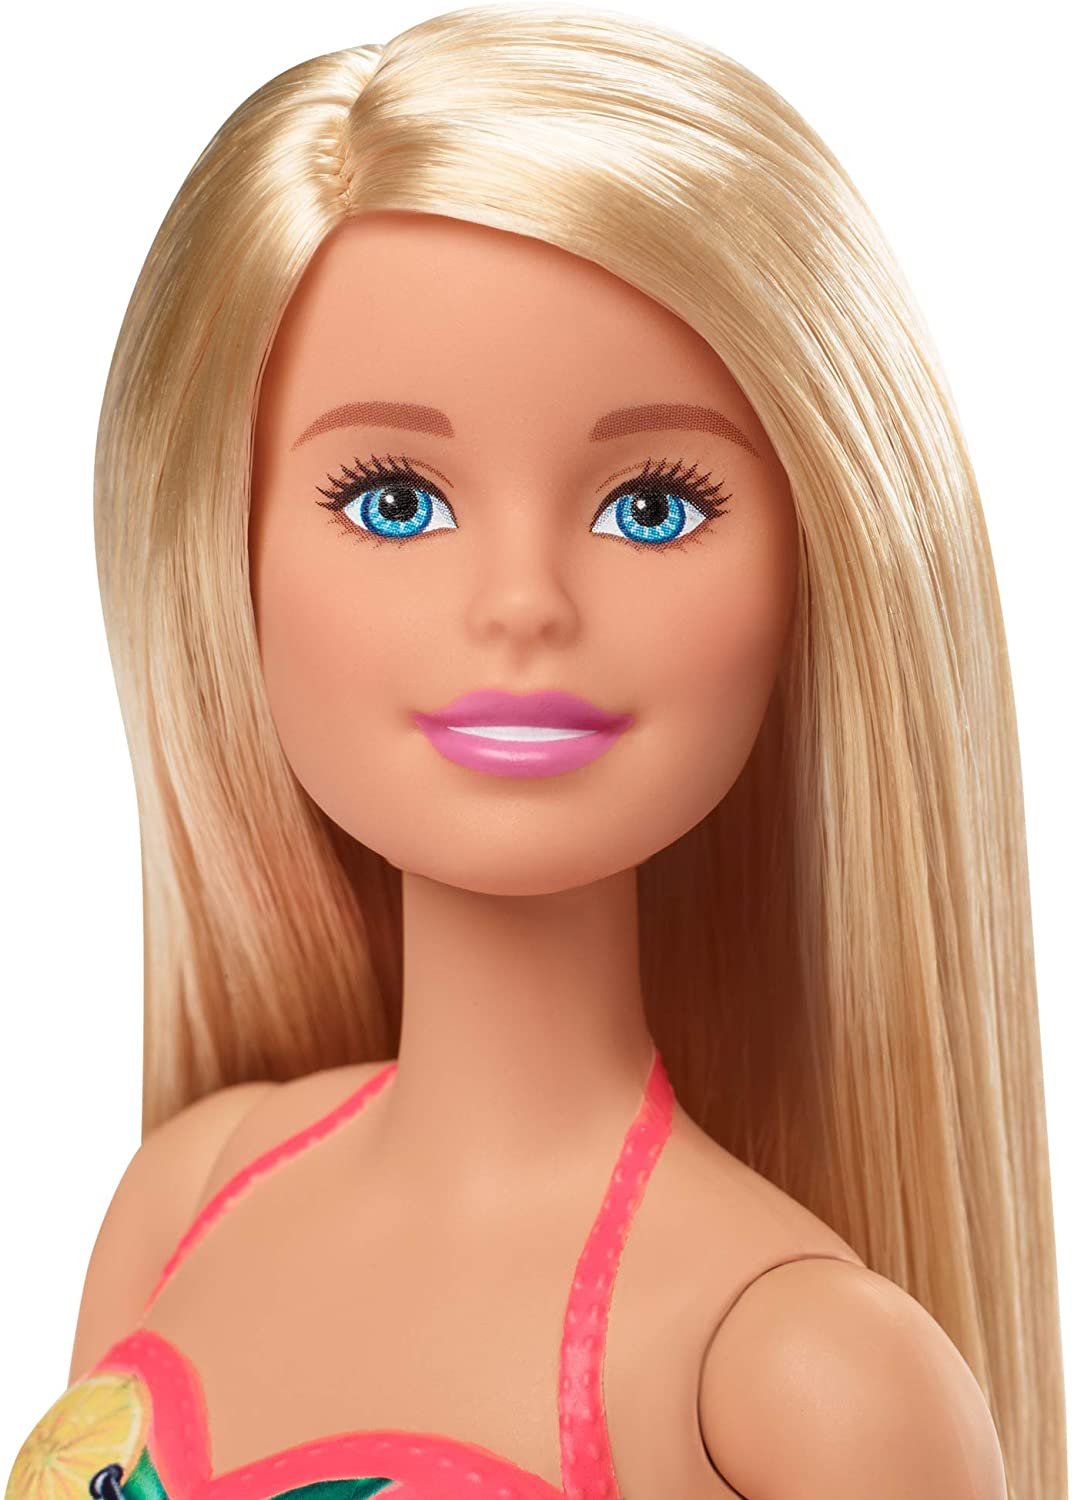 Boneca Barbie com Piscina Chique Mattel - Fátima Criança